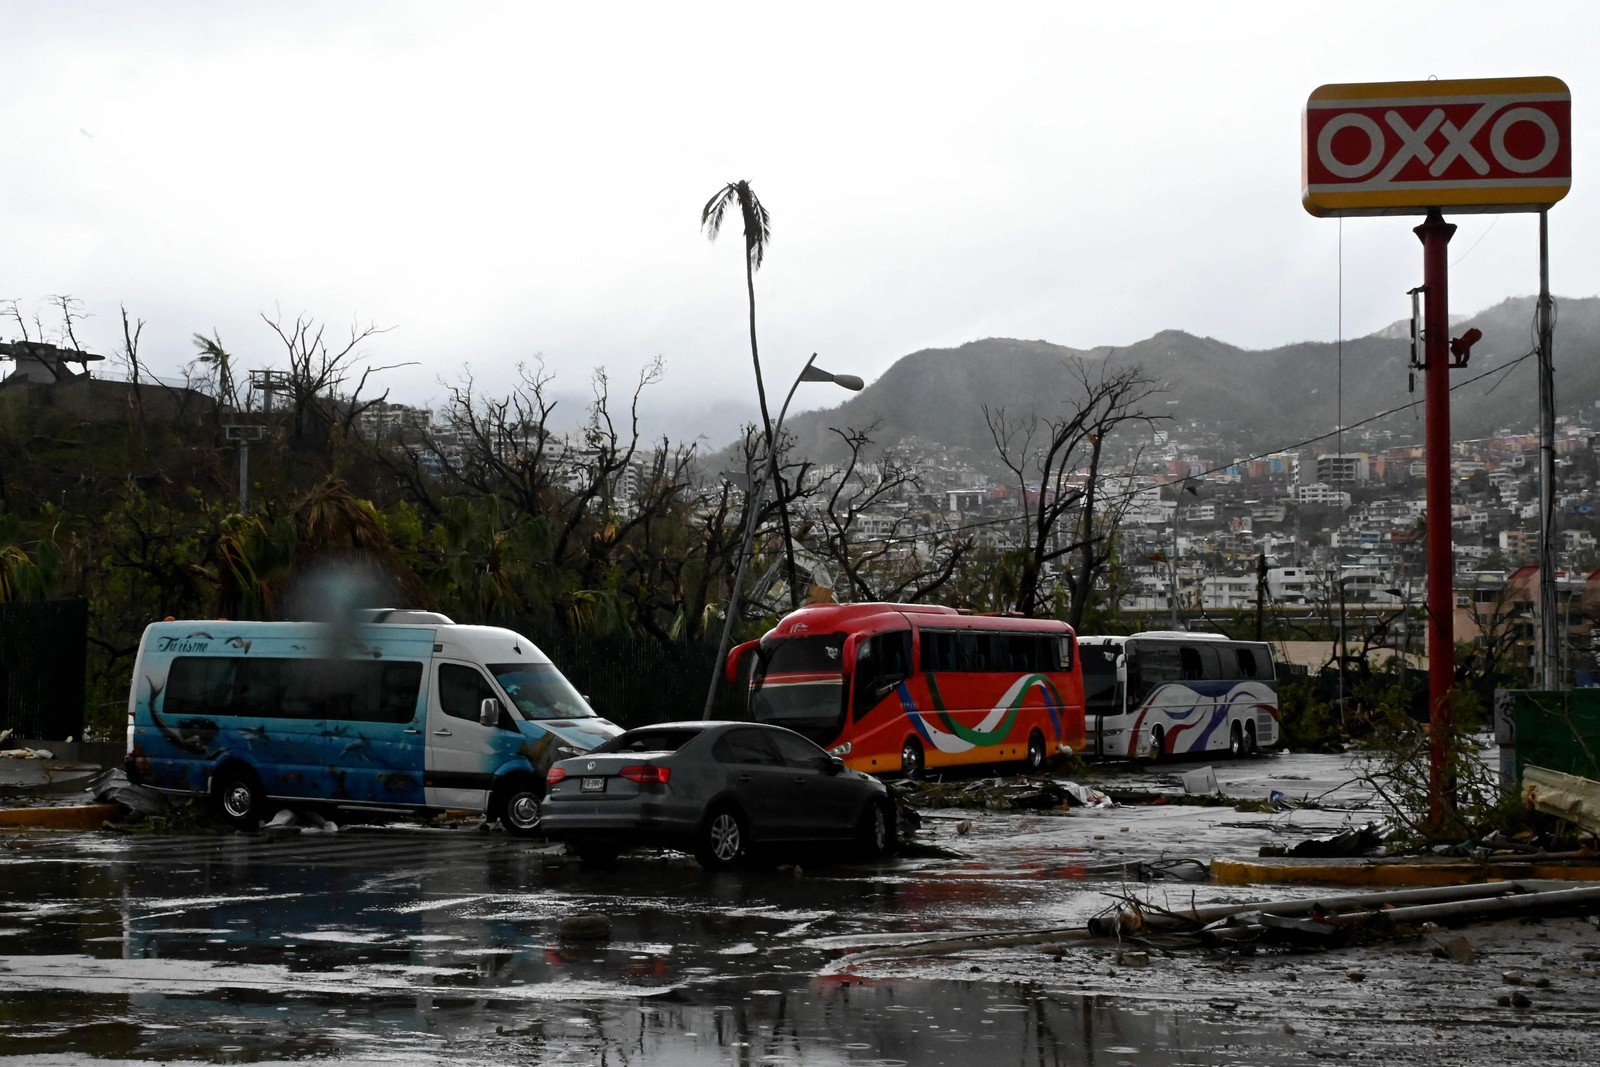 Vista dos danos causados ​​​​após a passagem do furacão Otis em Acapulco, estado de Guerrero, México — Foto: FRANCISCO ROBLES/AFP